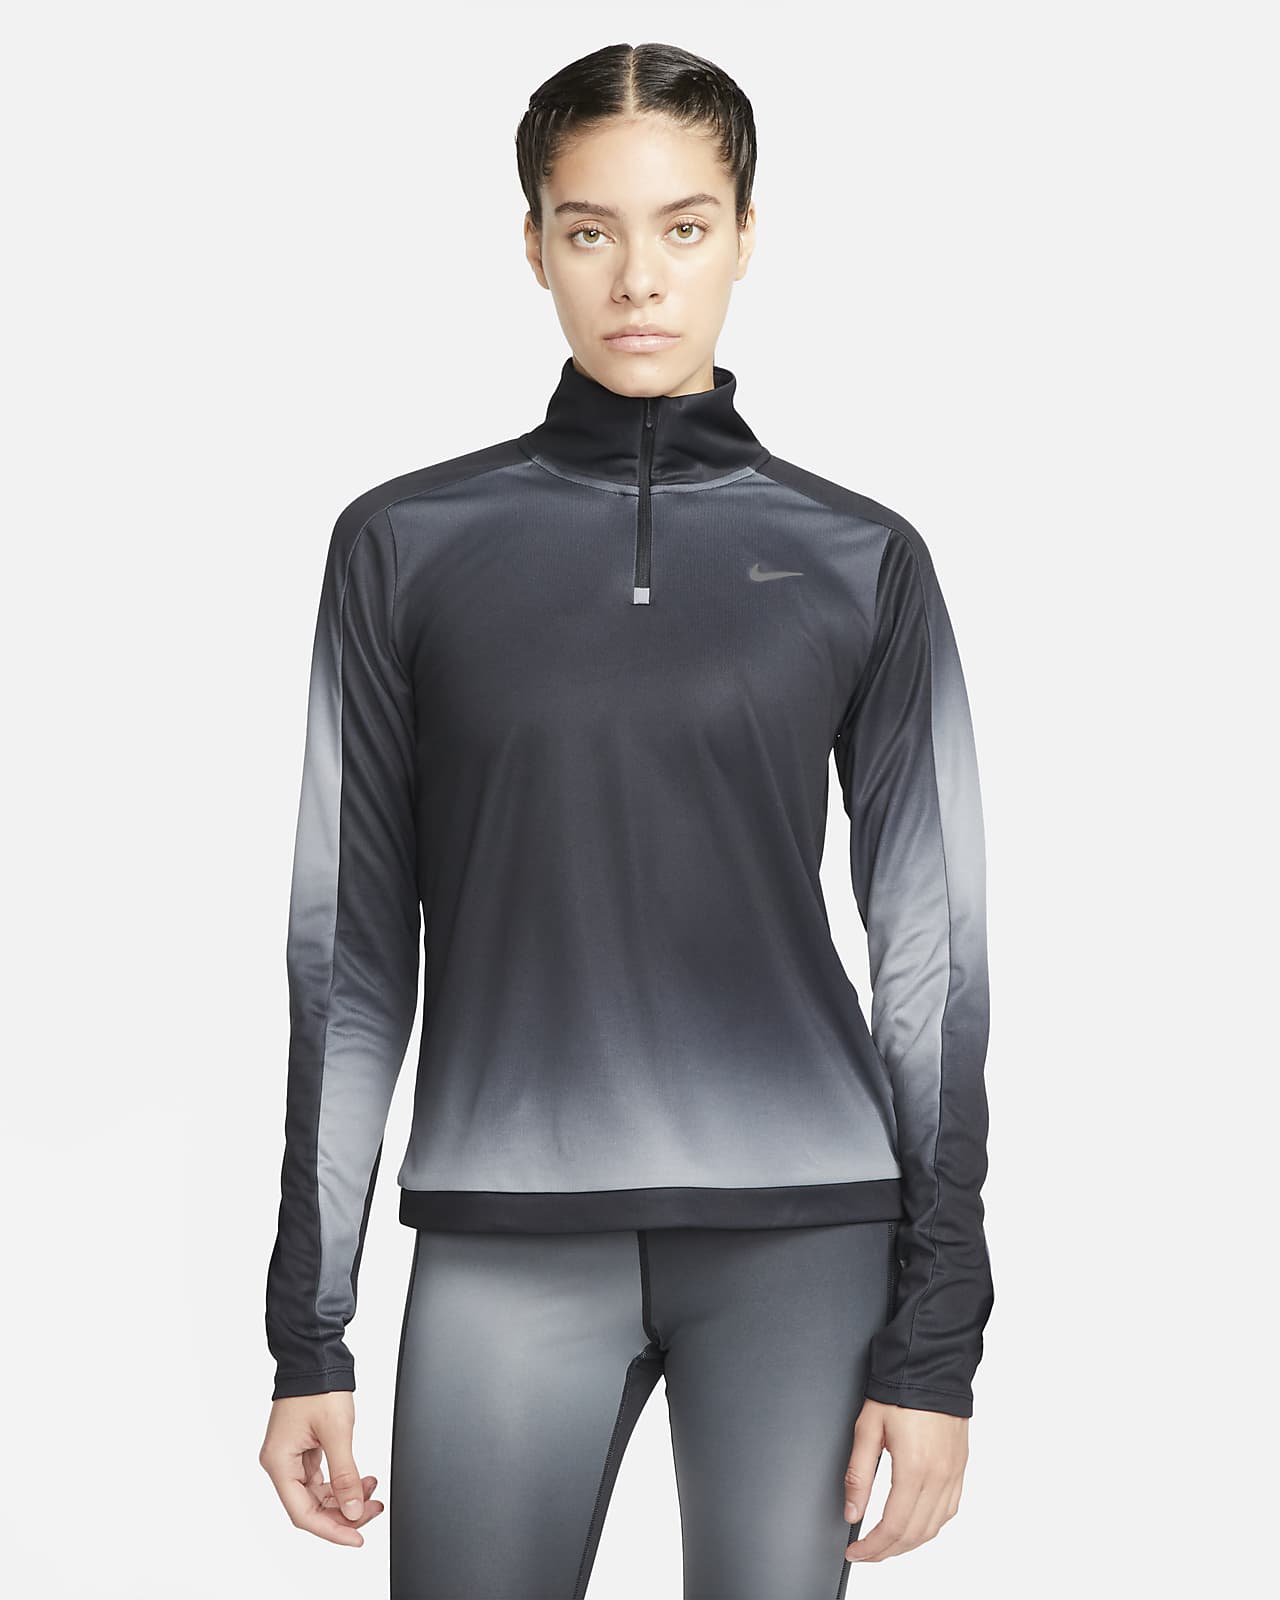 Nike Dri-FIT Swoosh-løbetrøje med print 1/4 lynlås til kvinder. Nike DK